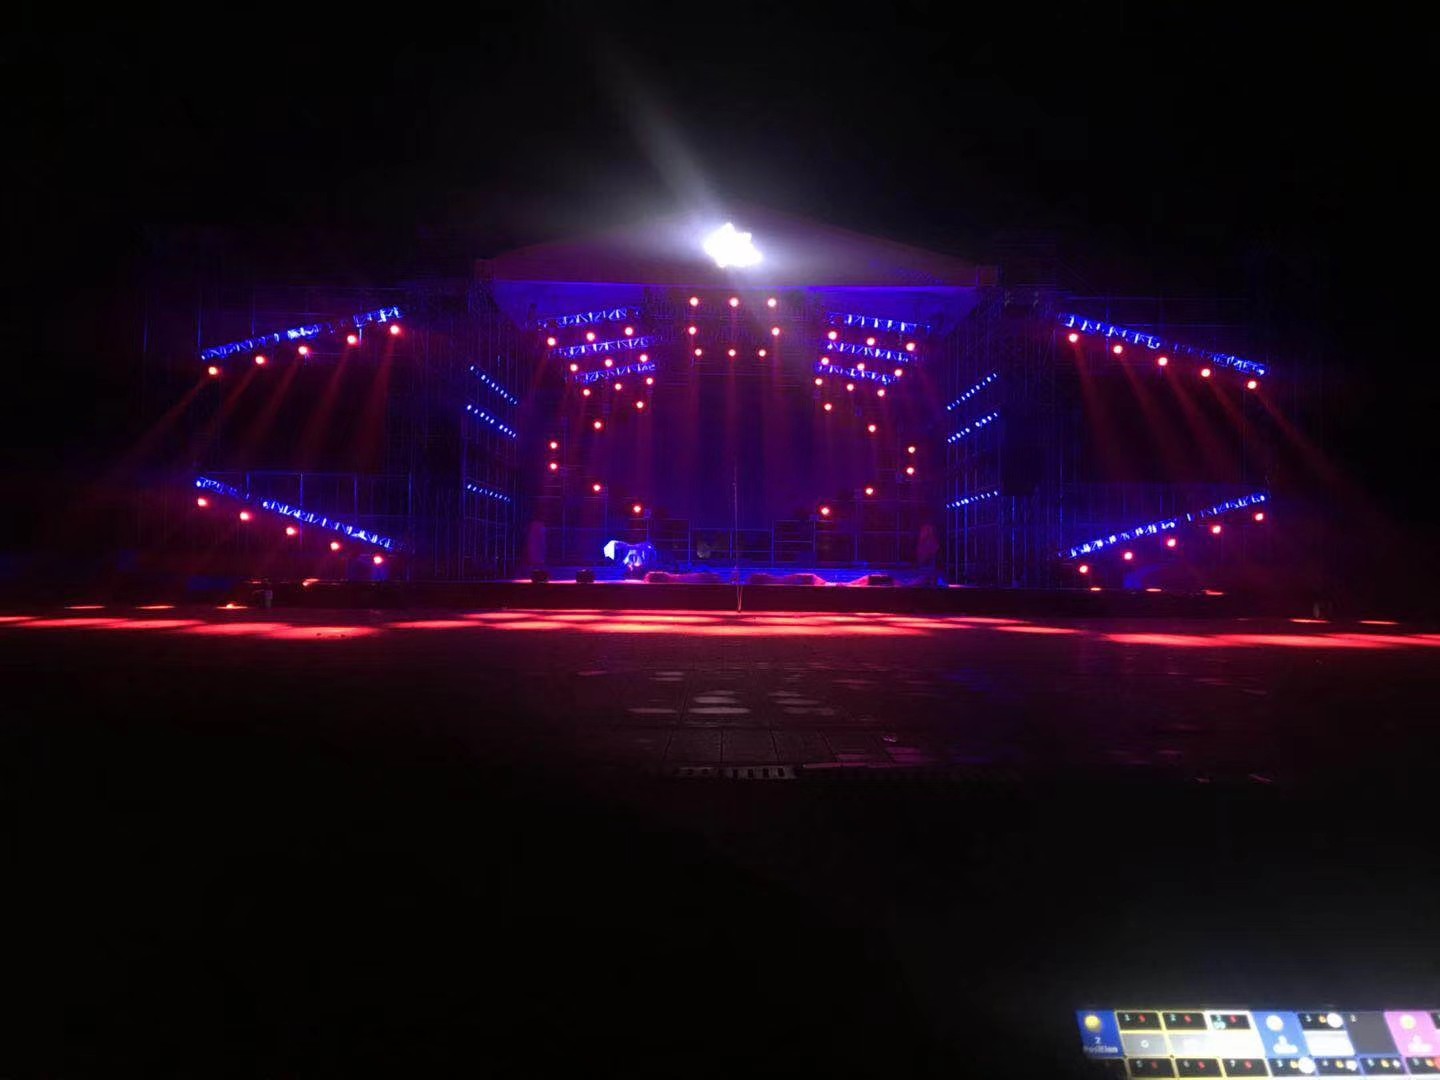 江苏K15LED 摇头灯 2020 K15 LED moving head light project in China Jiangsu Province